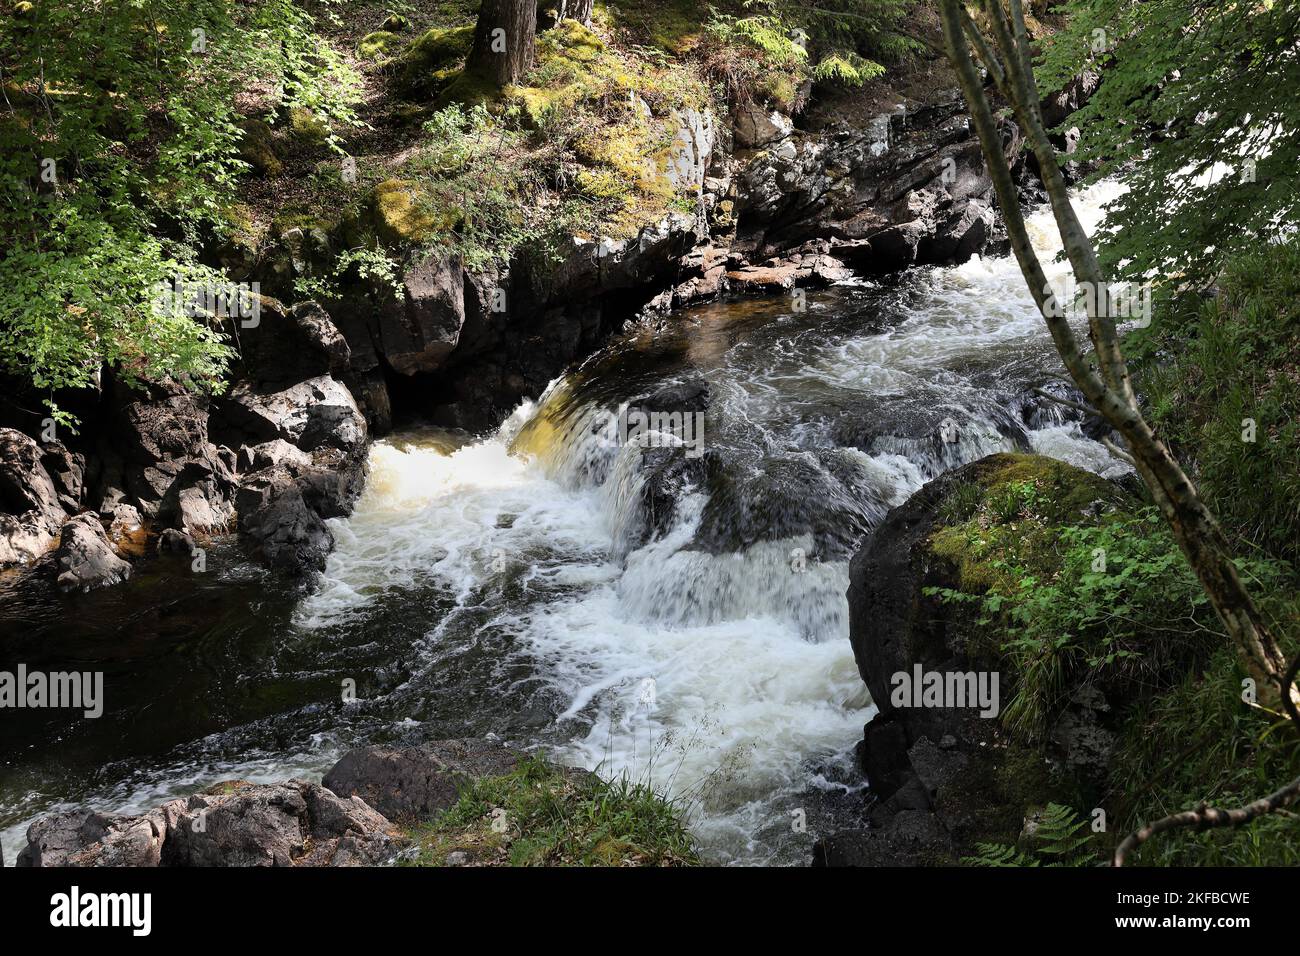 The River Inver, Lochinver, Scotland, UK Stock Photo